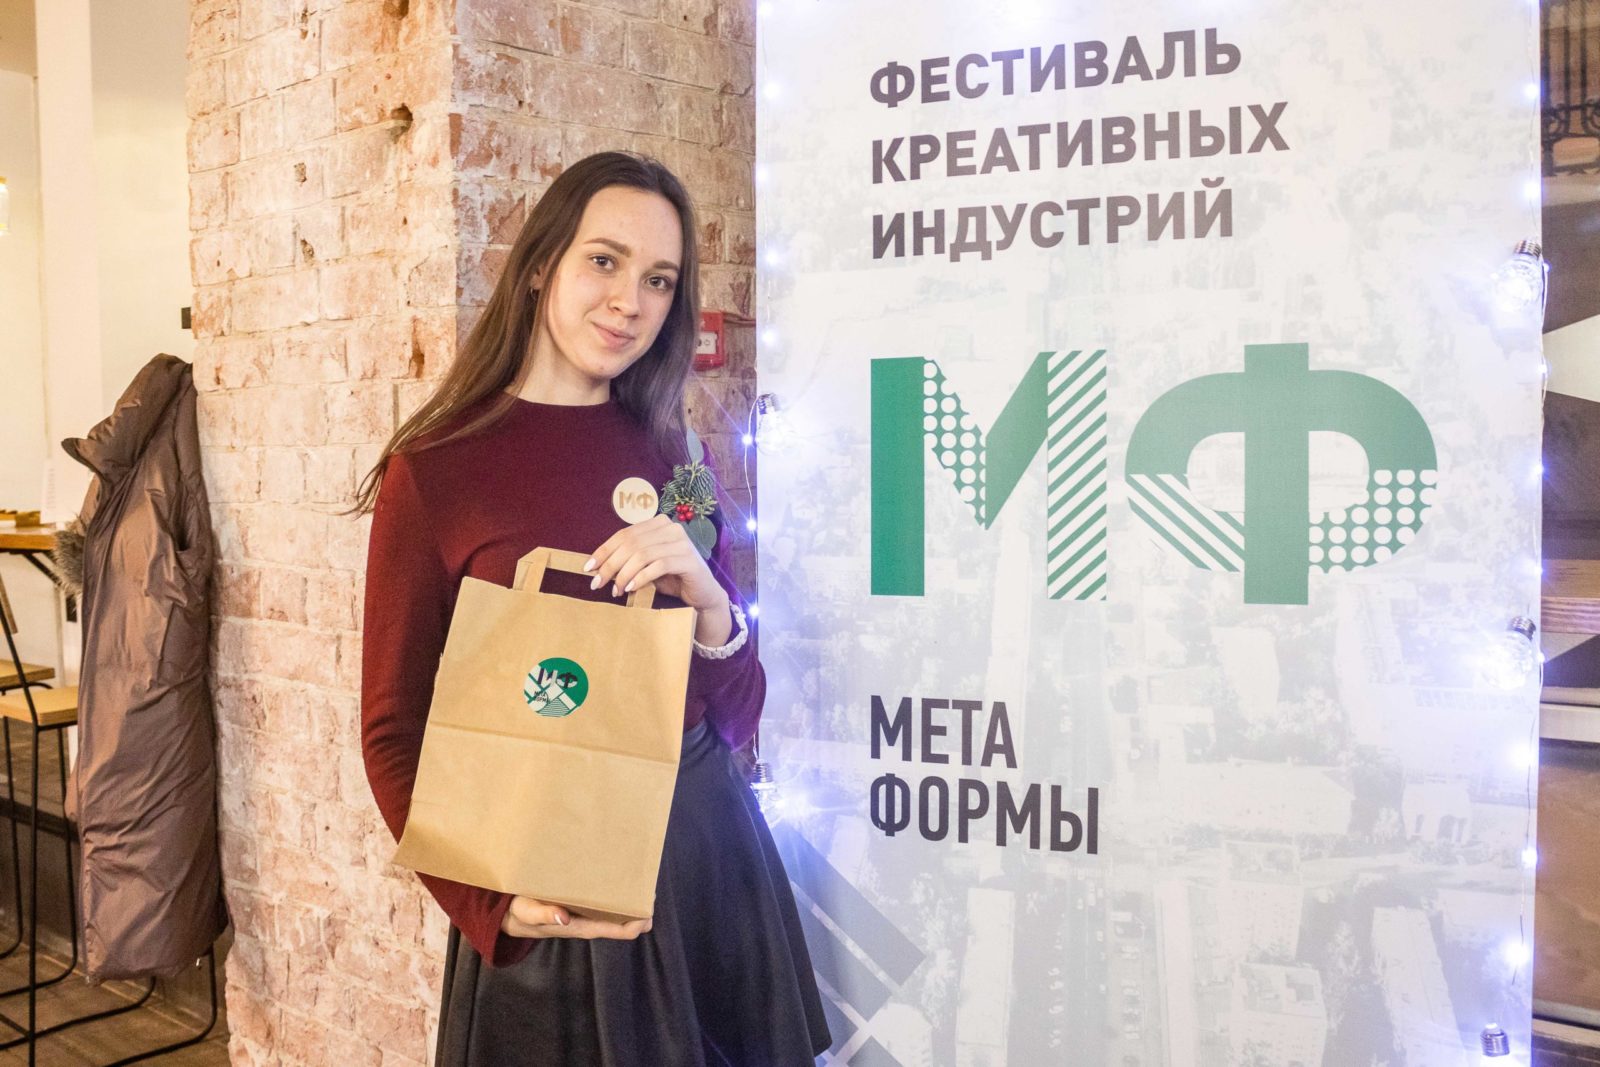 Молодежь Томска познакомилась с креативными индустриями